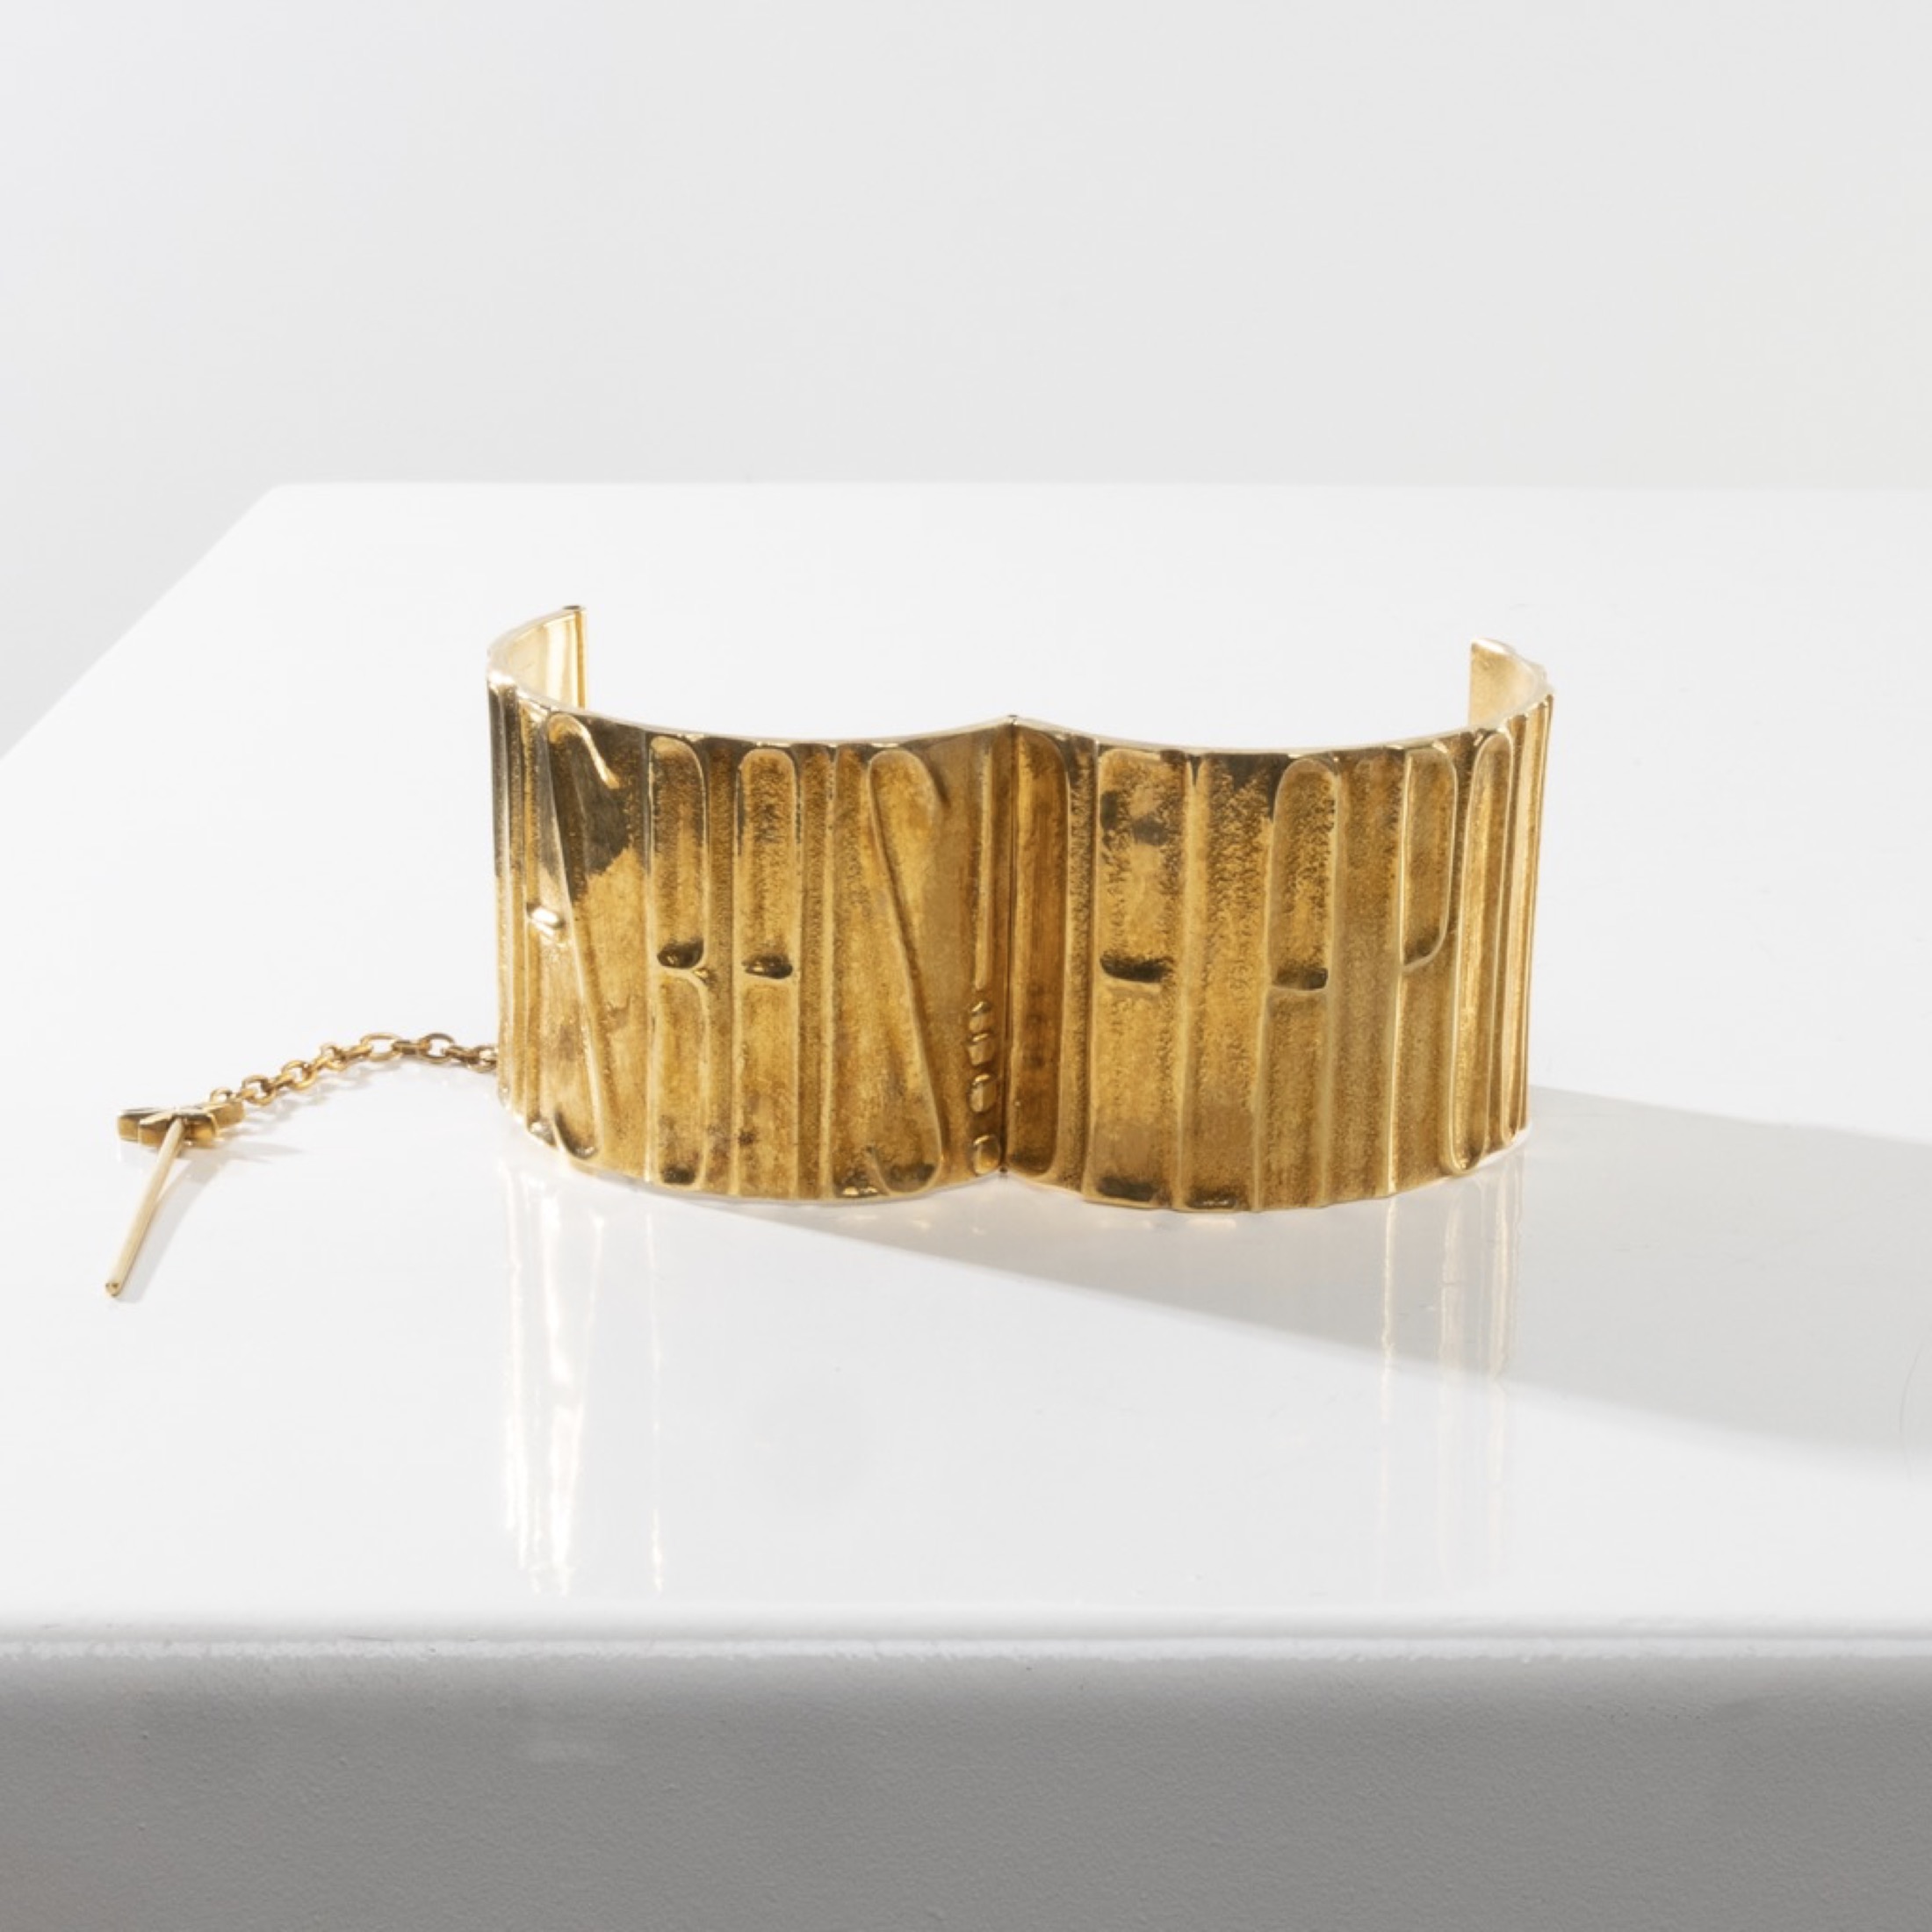 De la poudre et des bals by Line Vautrin - Gilt bronze armband - 03